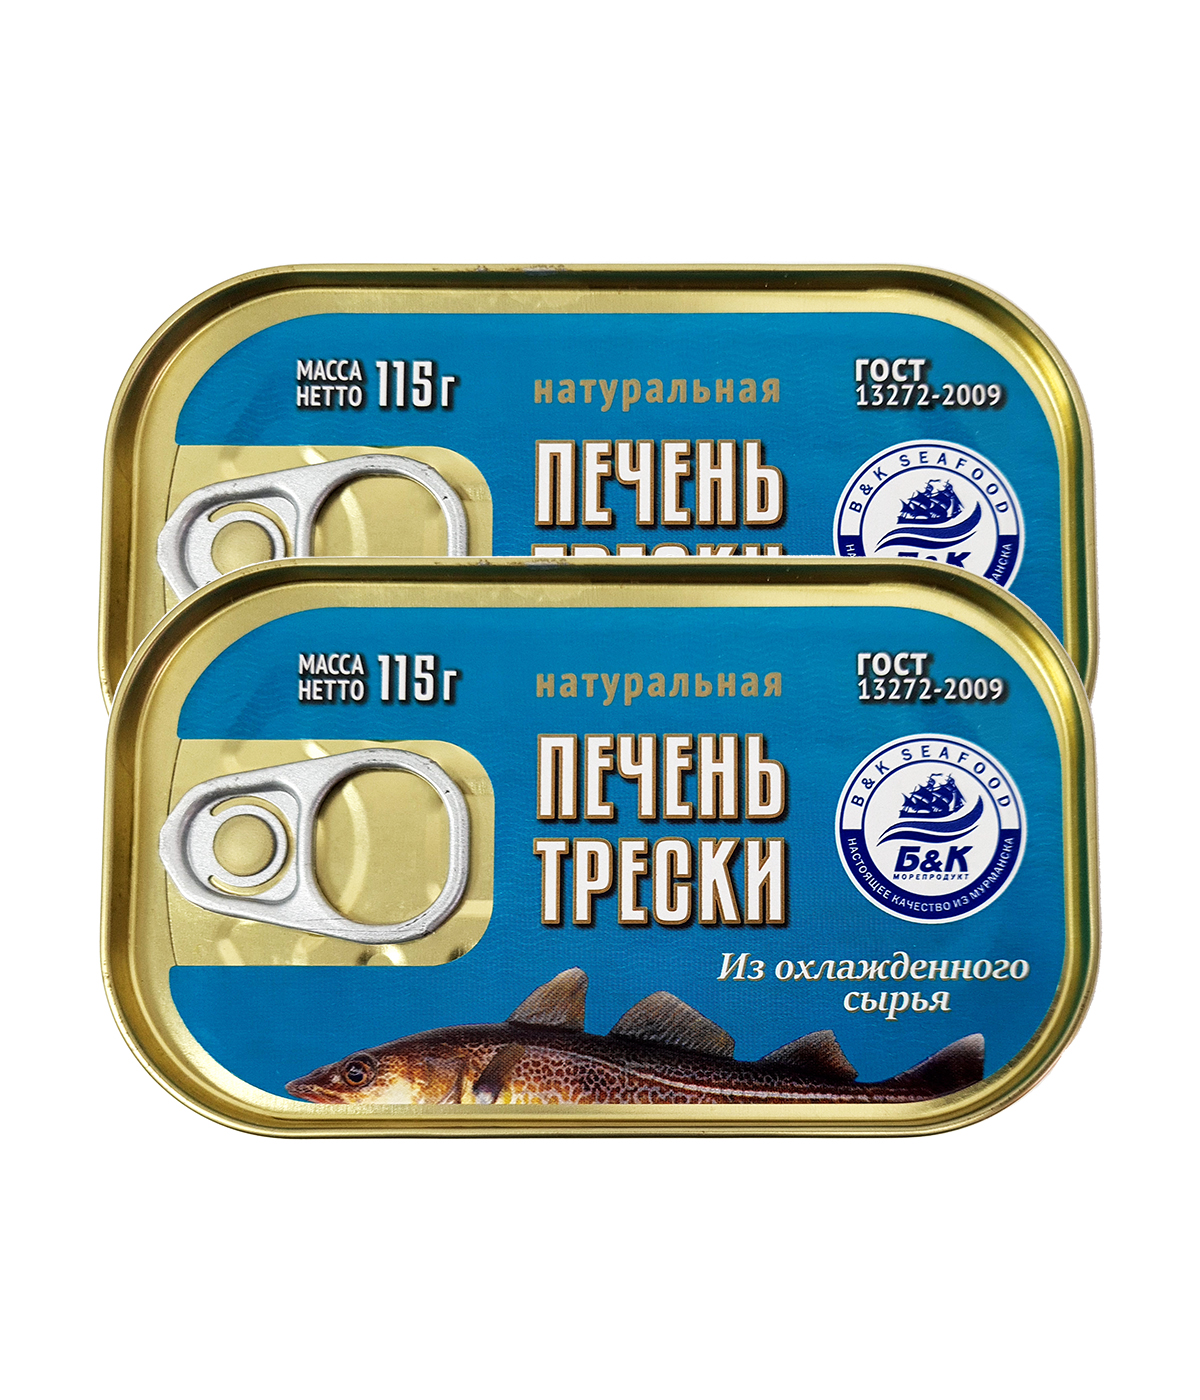 Печень трески атлантической, охлажденная, Боско-Морепродукт, 2 шт. по 115 г